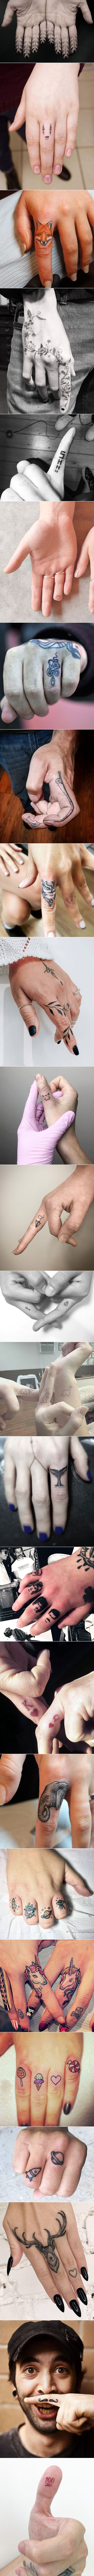 Tetovaže na prstima postaju sve popularnije, a ove slike će vam otkriti 25 zanimljivih ideja